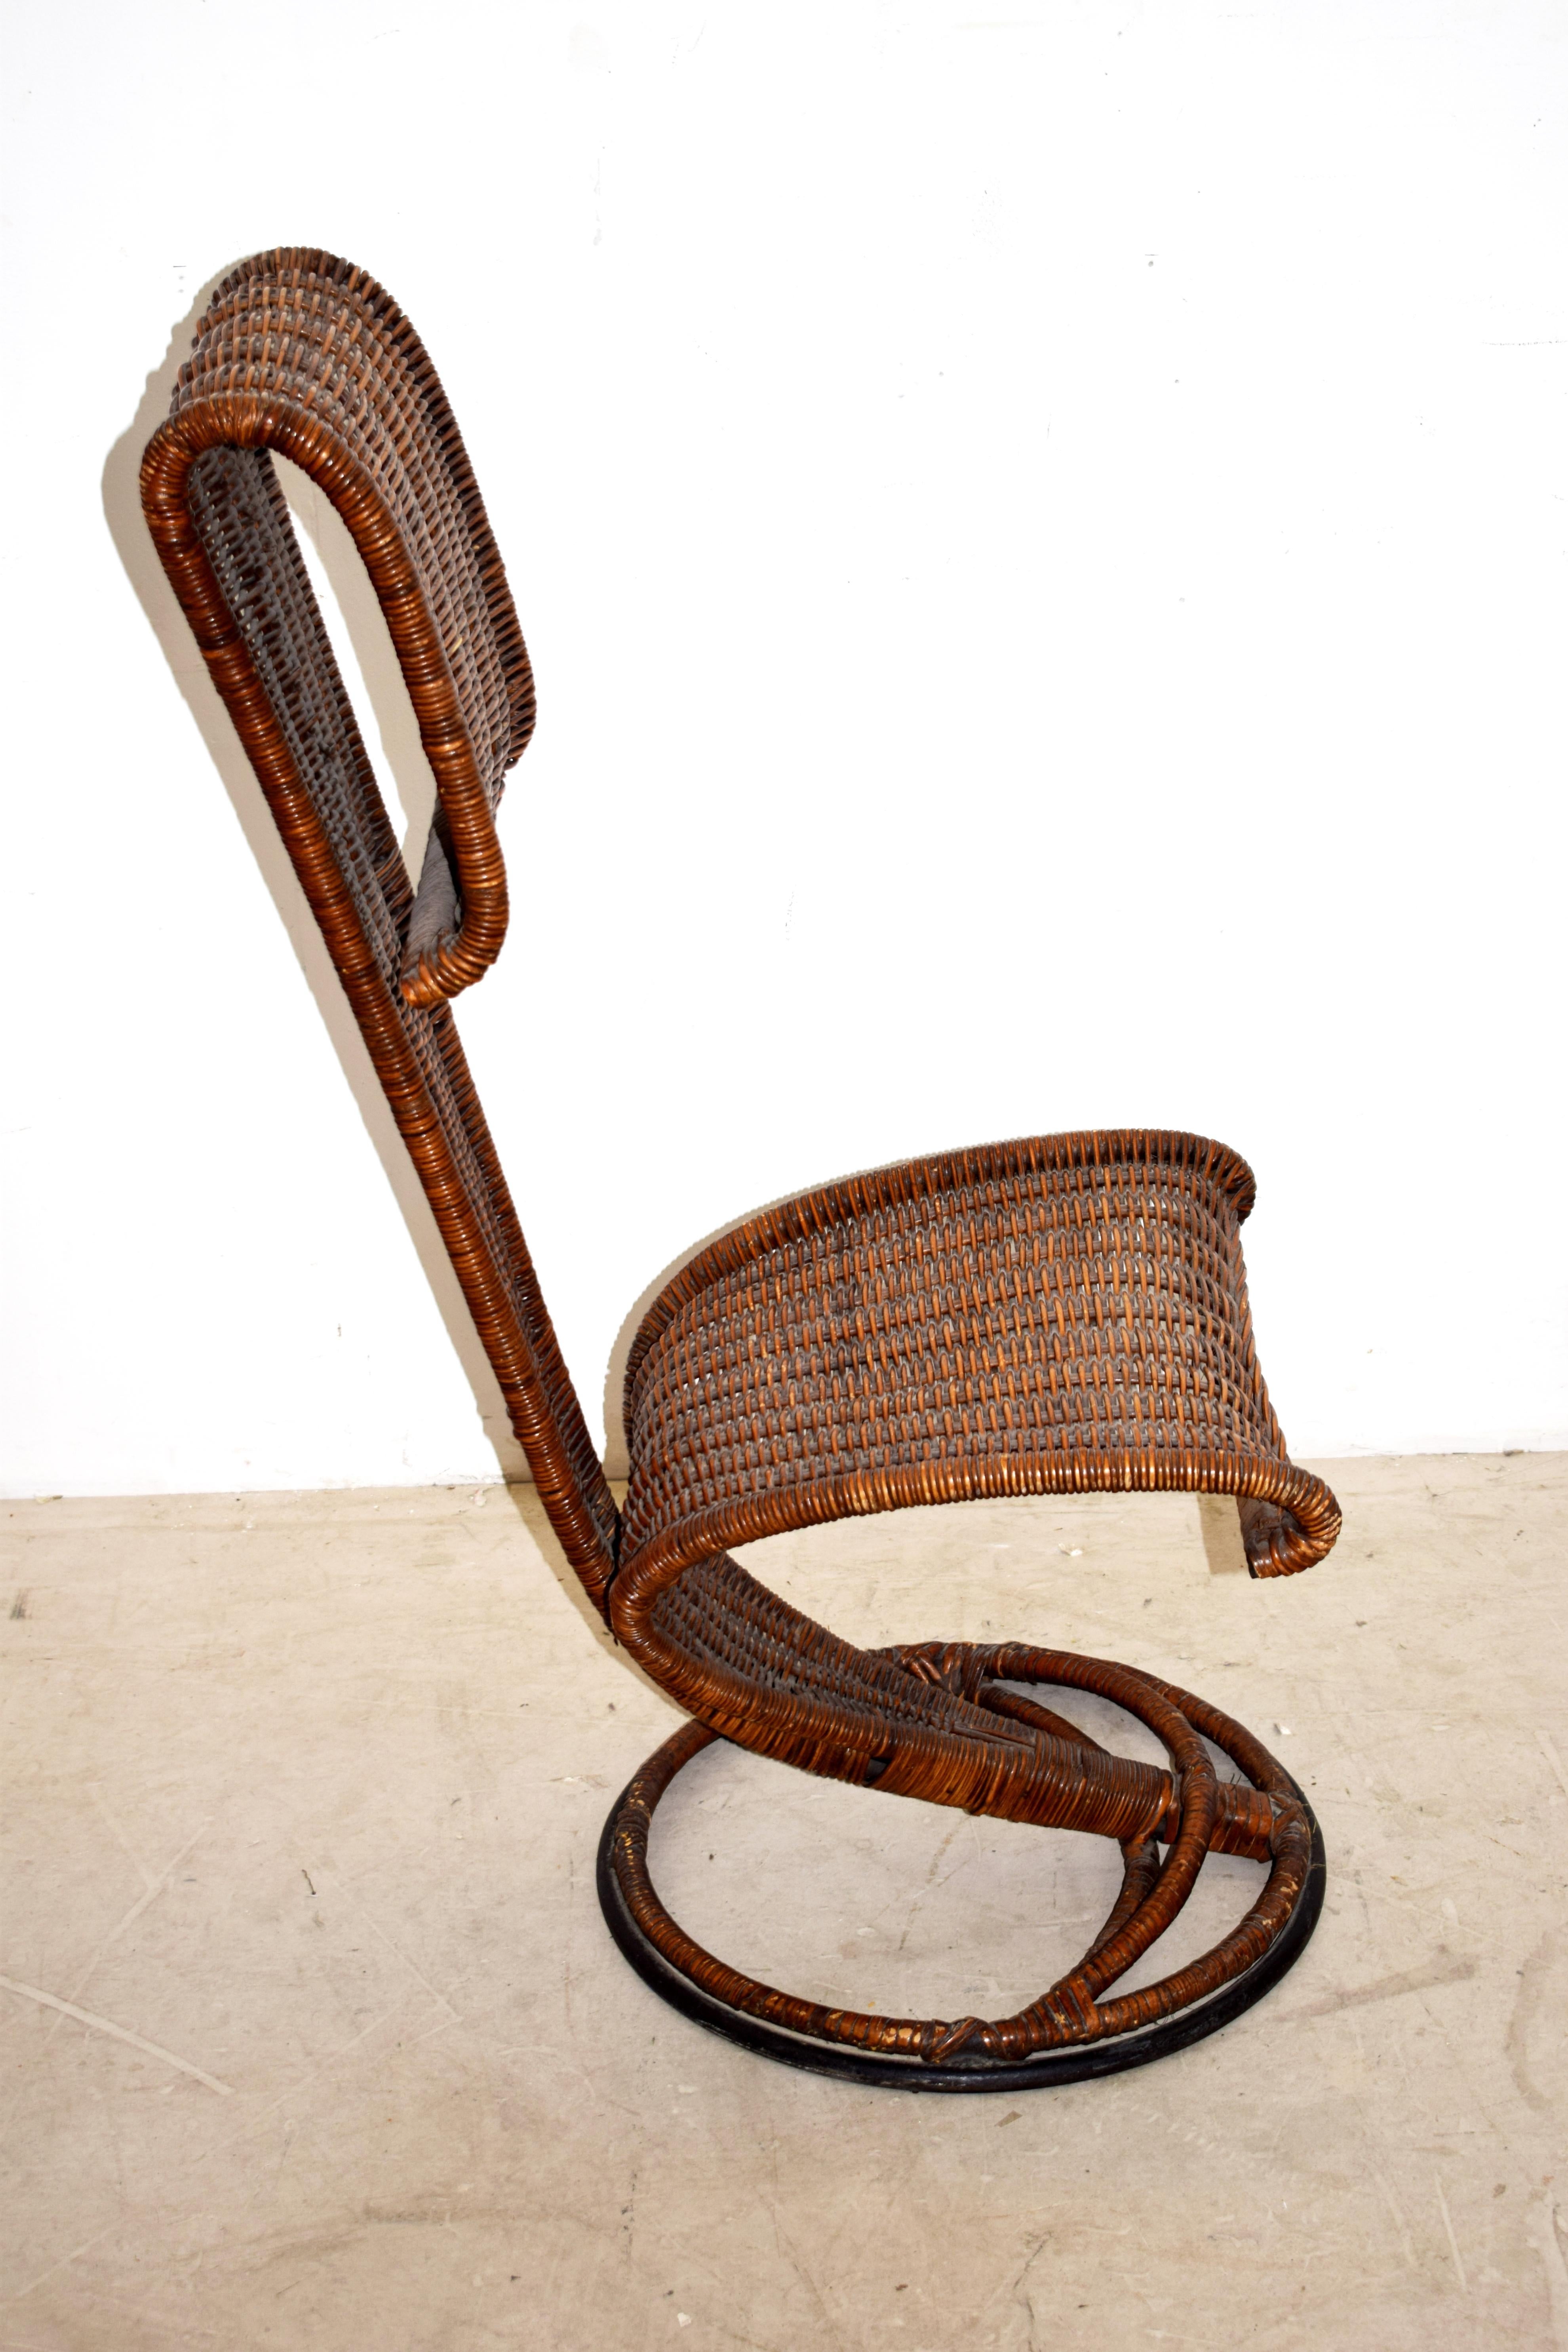 Italienischer Stuhl von Marzio Cecchi, 1960er Jahre.
Abmessungen: H= 93 cm; B= 42 cm; T= 55 cm; Sitzhöhe = 42 cm.